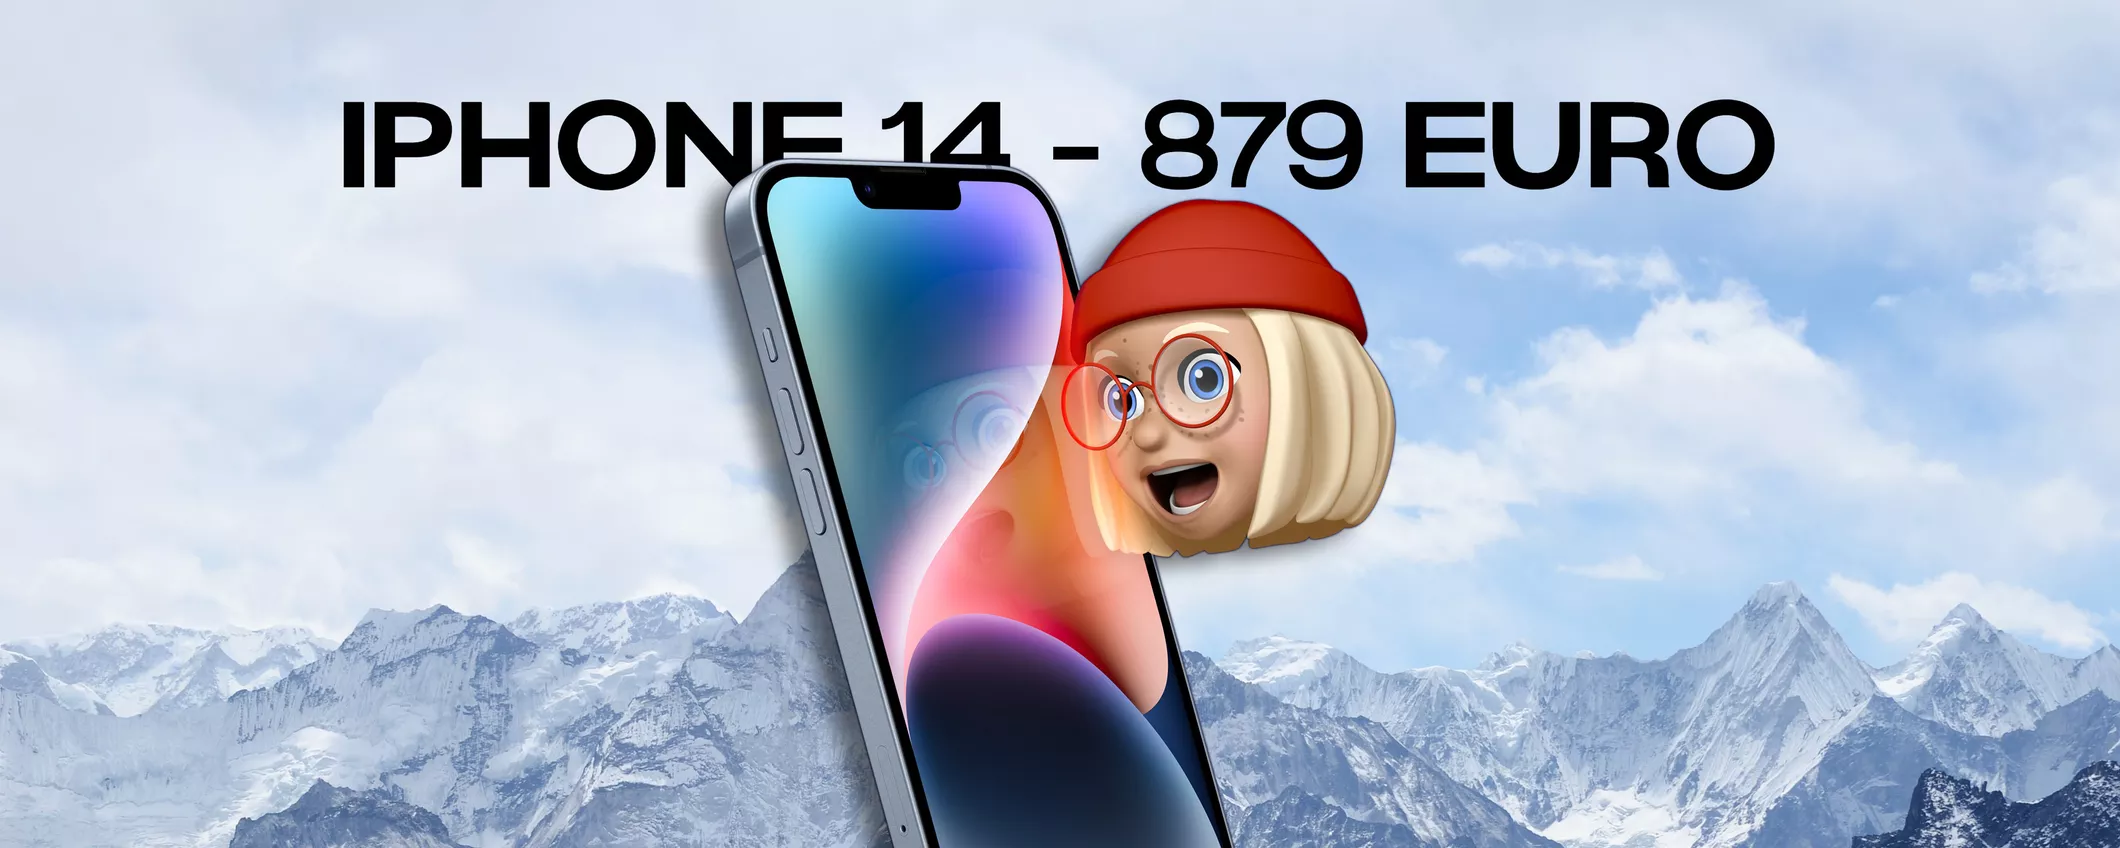 iPhone 14 in OFFERTA a 879 euro: su eBay la PROMO è davvero pazzesca